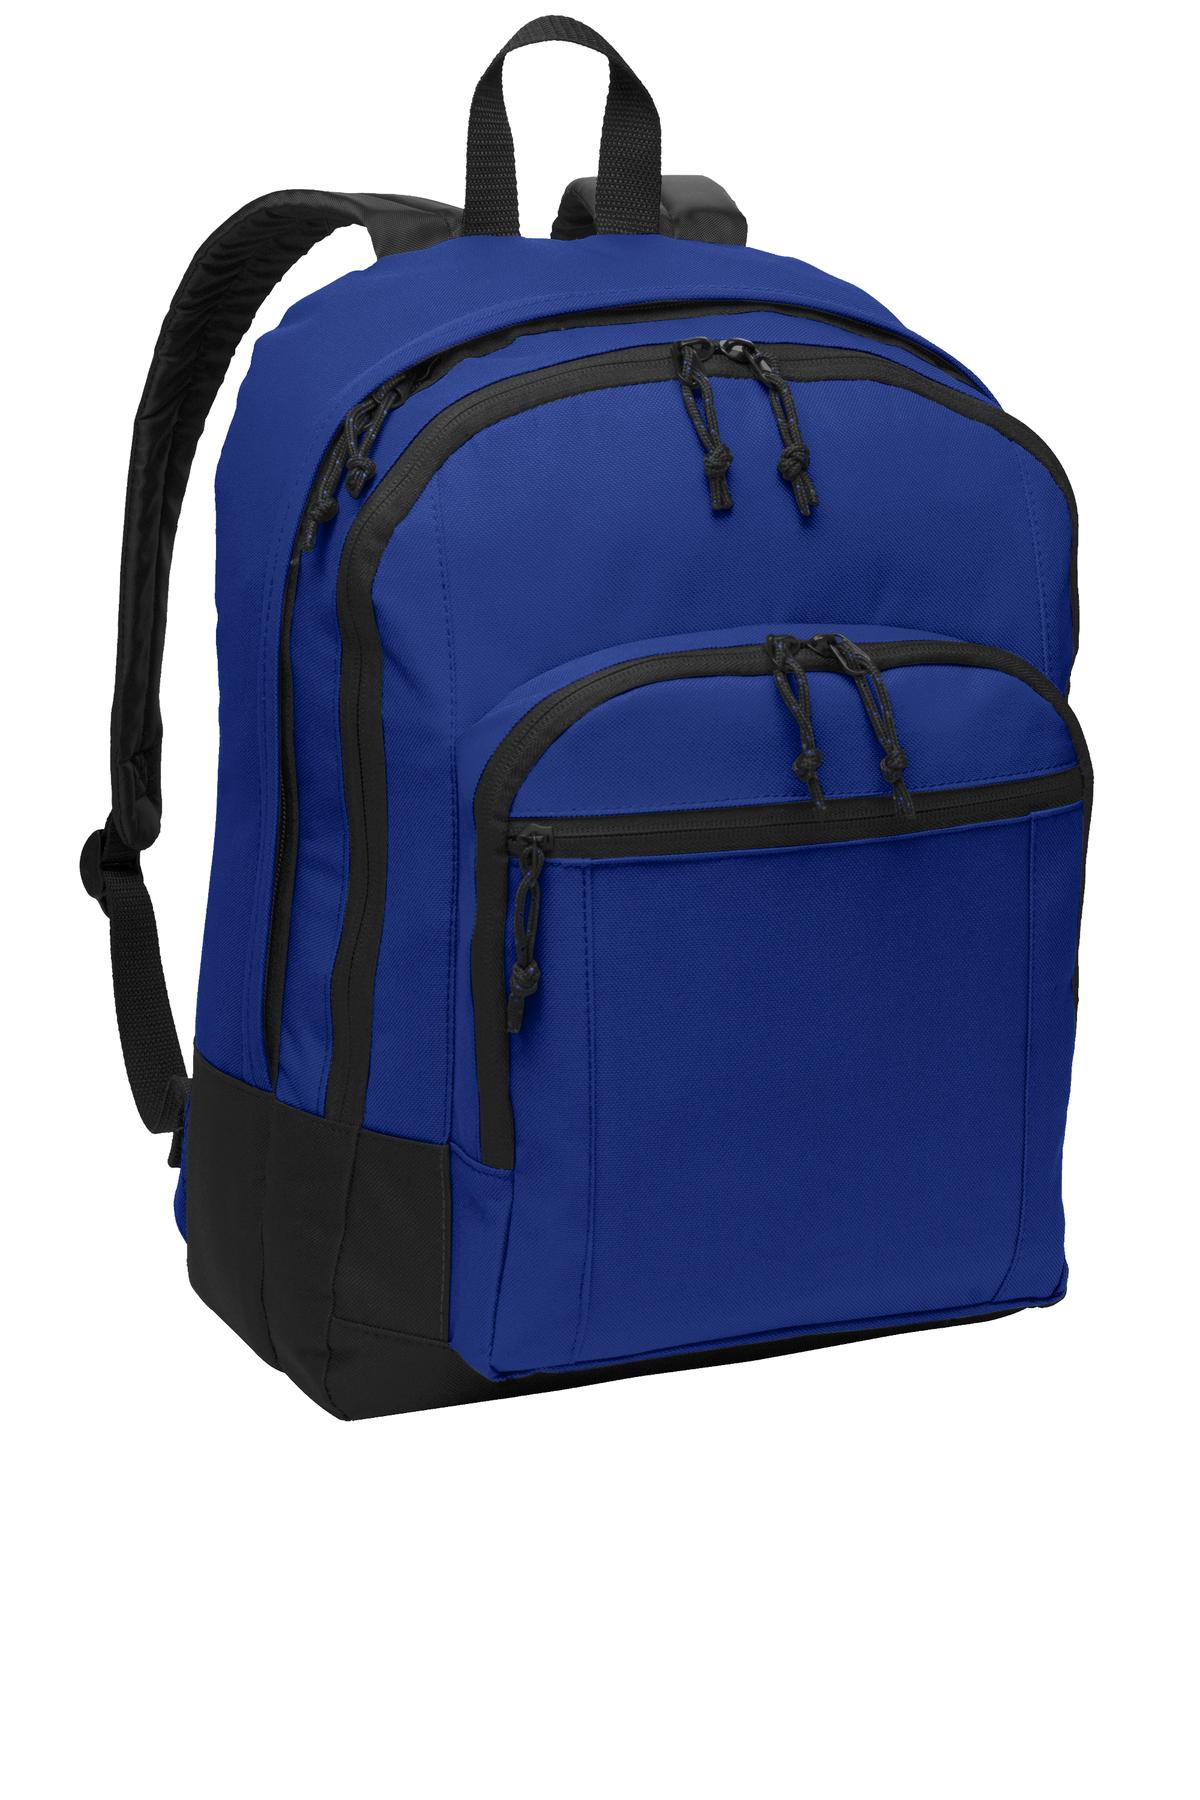 Port Authority® Basic Backpack. BG204 - DFW Impression